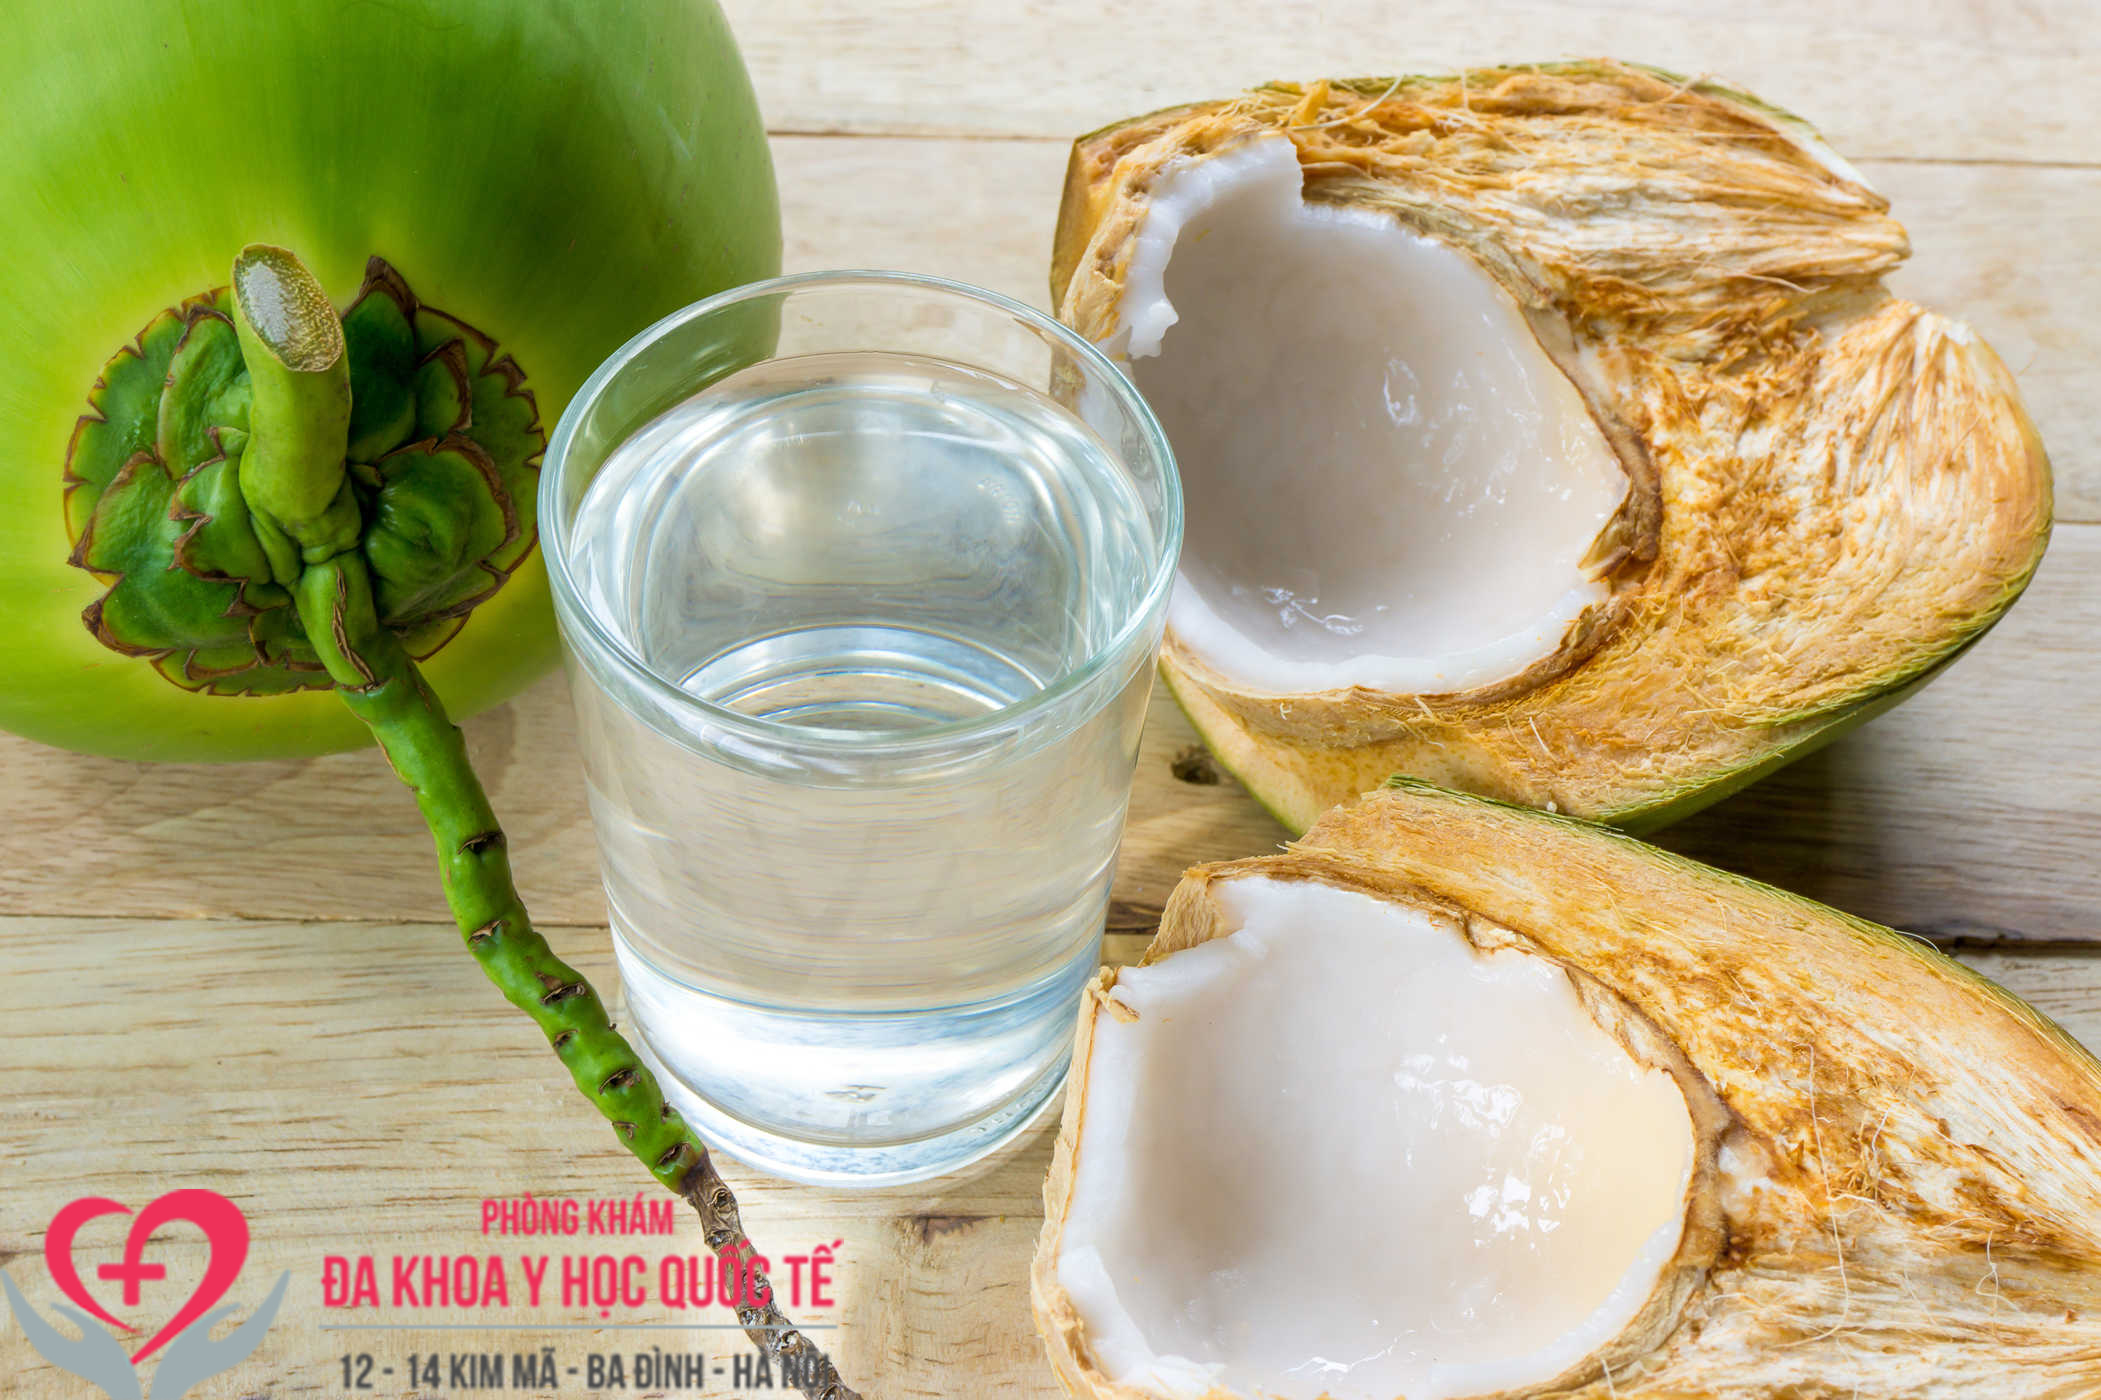 Uống nước dừa có làm tăng cân không